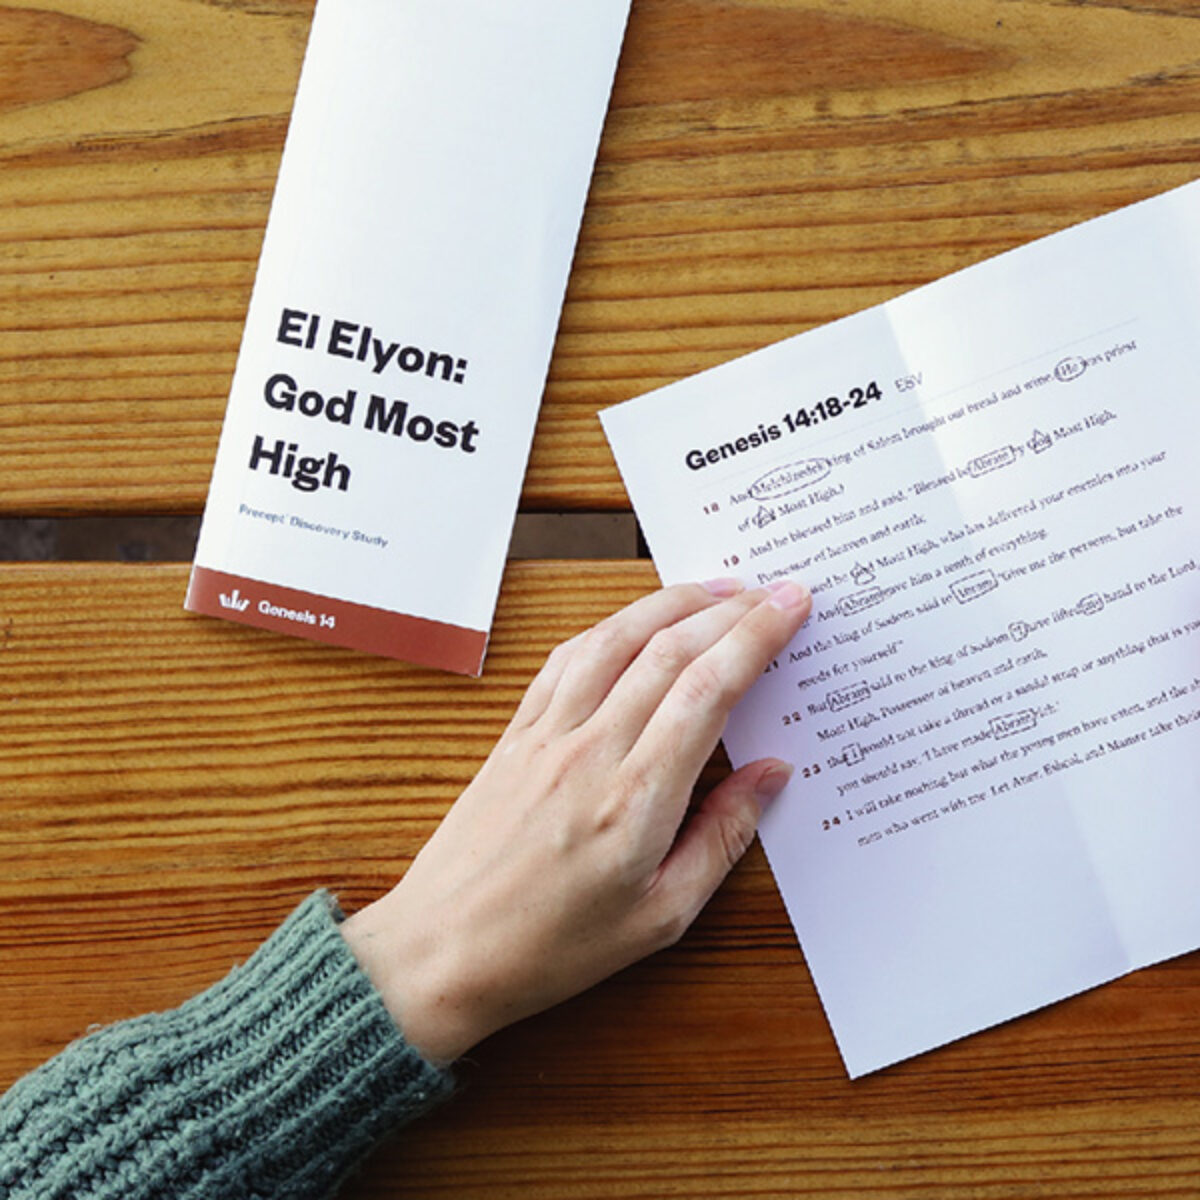 El Elyon: God Most High - Precept Discovery Study